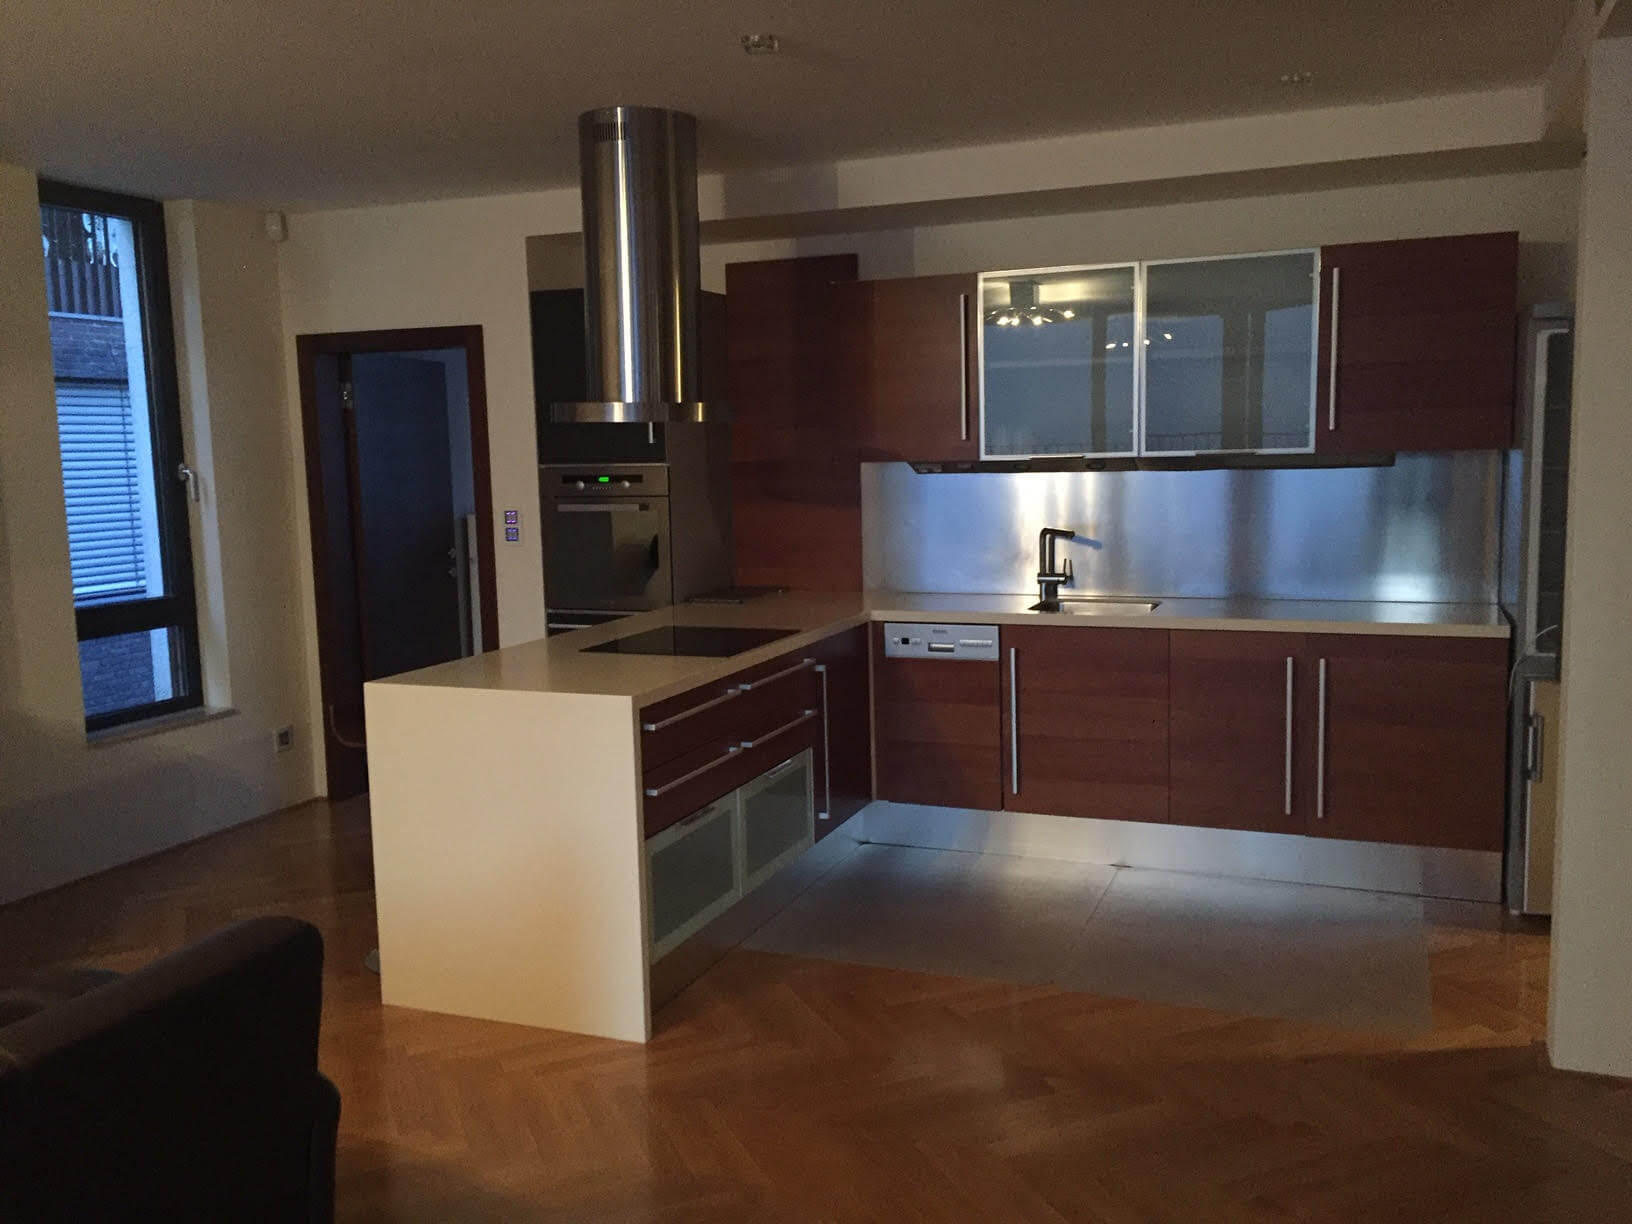 Prenajaté: Luxusný 3 izbový byt v centre BA, 88m2, Dunajská 48, balkón 6m, garážové státie,klimatizácia, krb-3